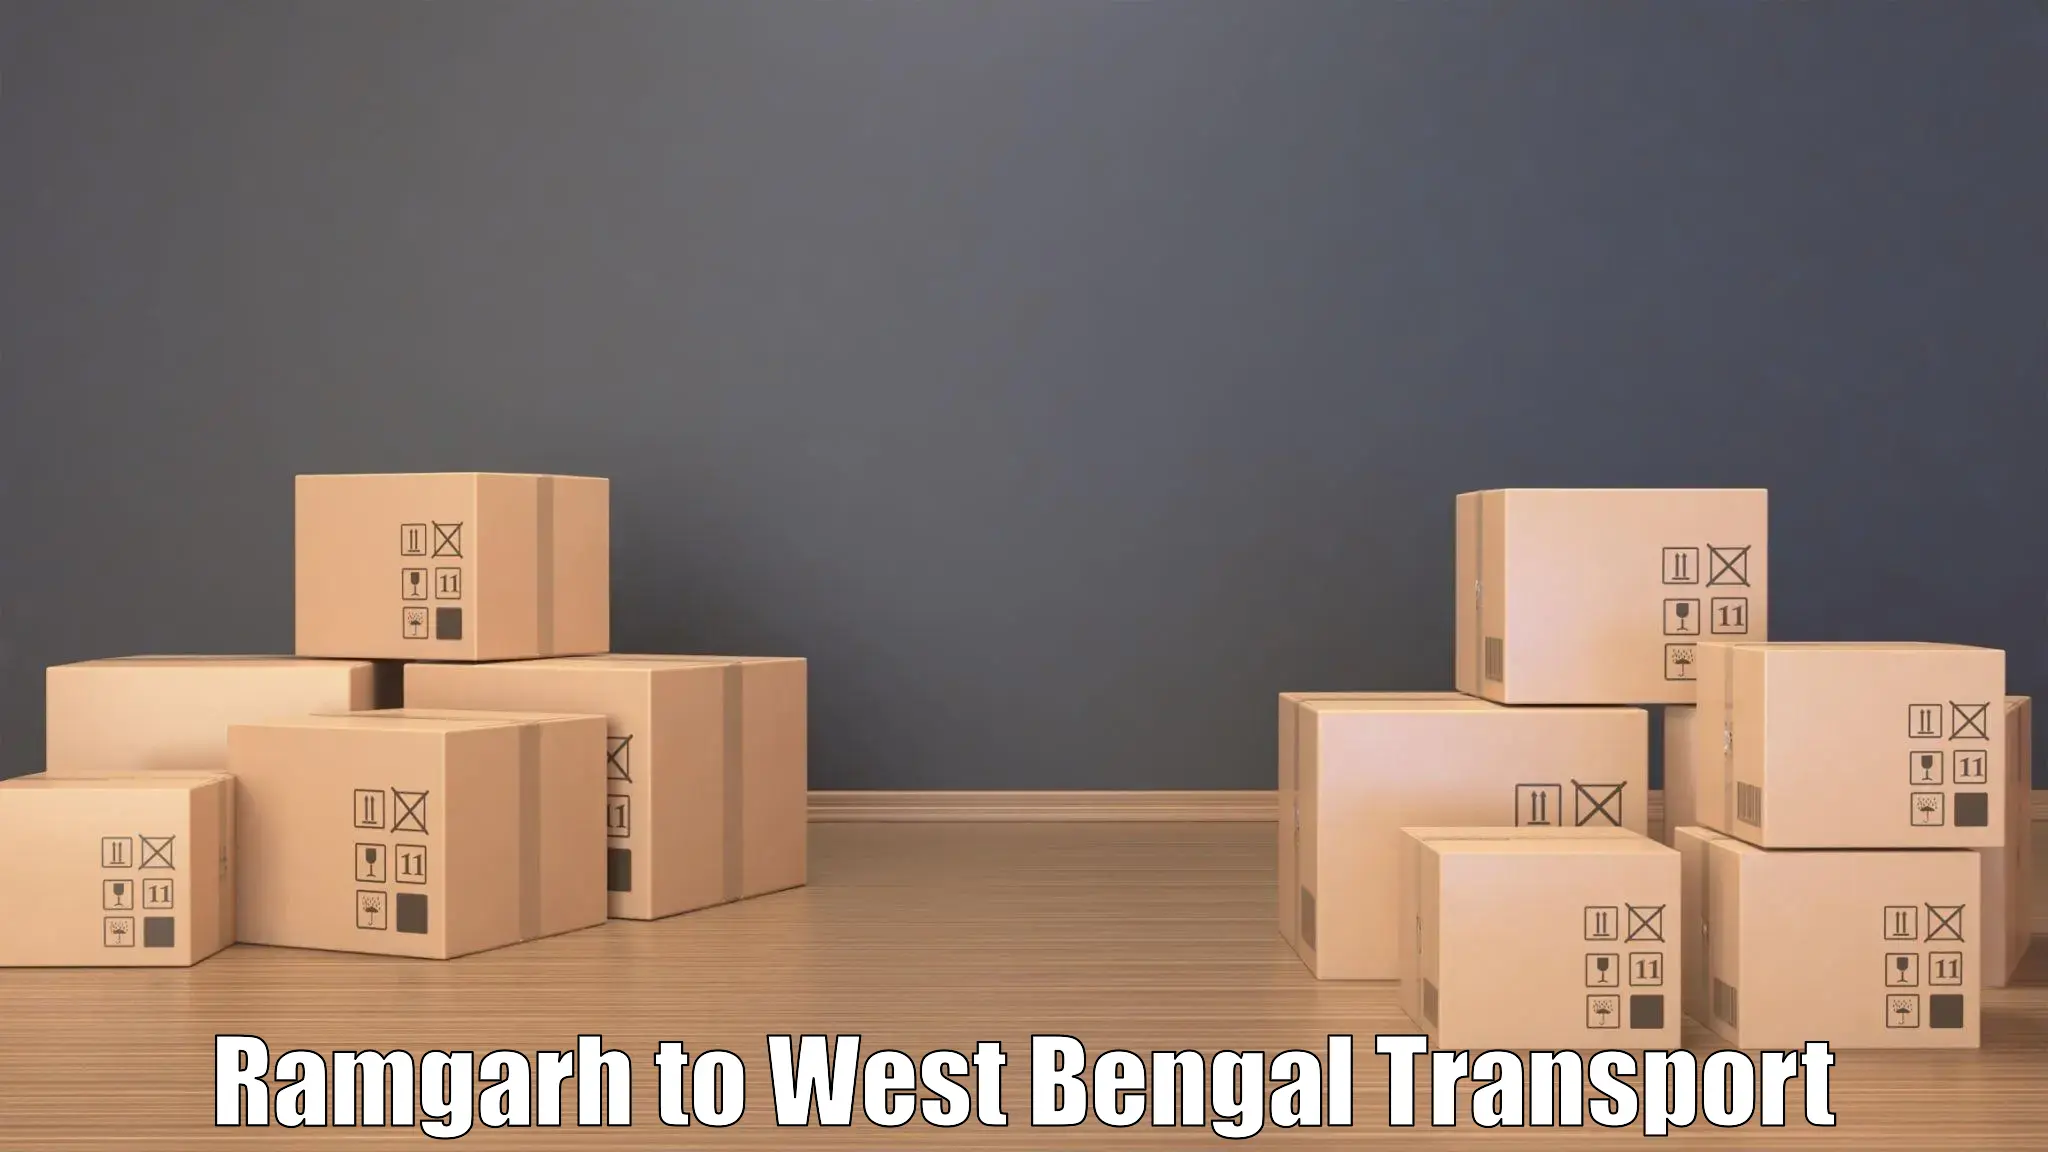 Shipping partner Ramgarh to IIT Kharagpur